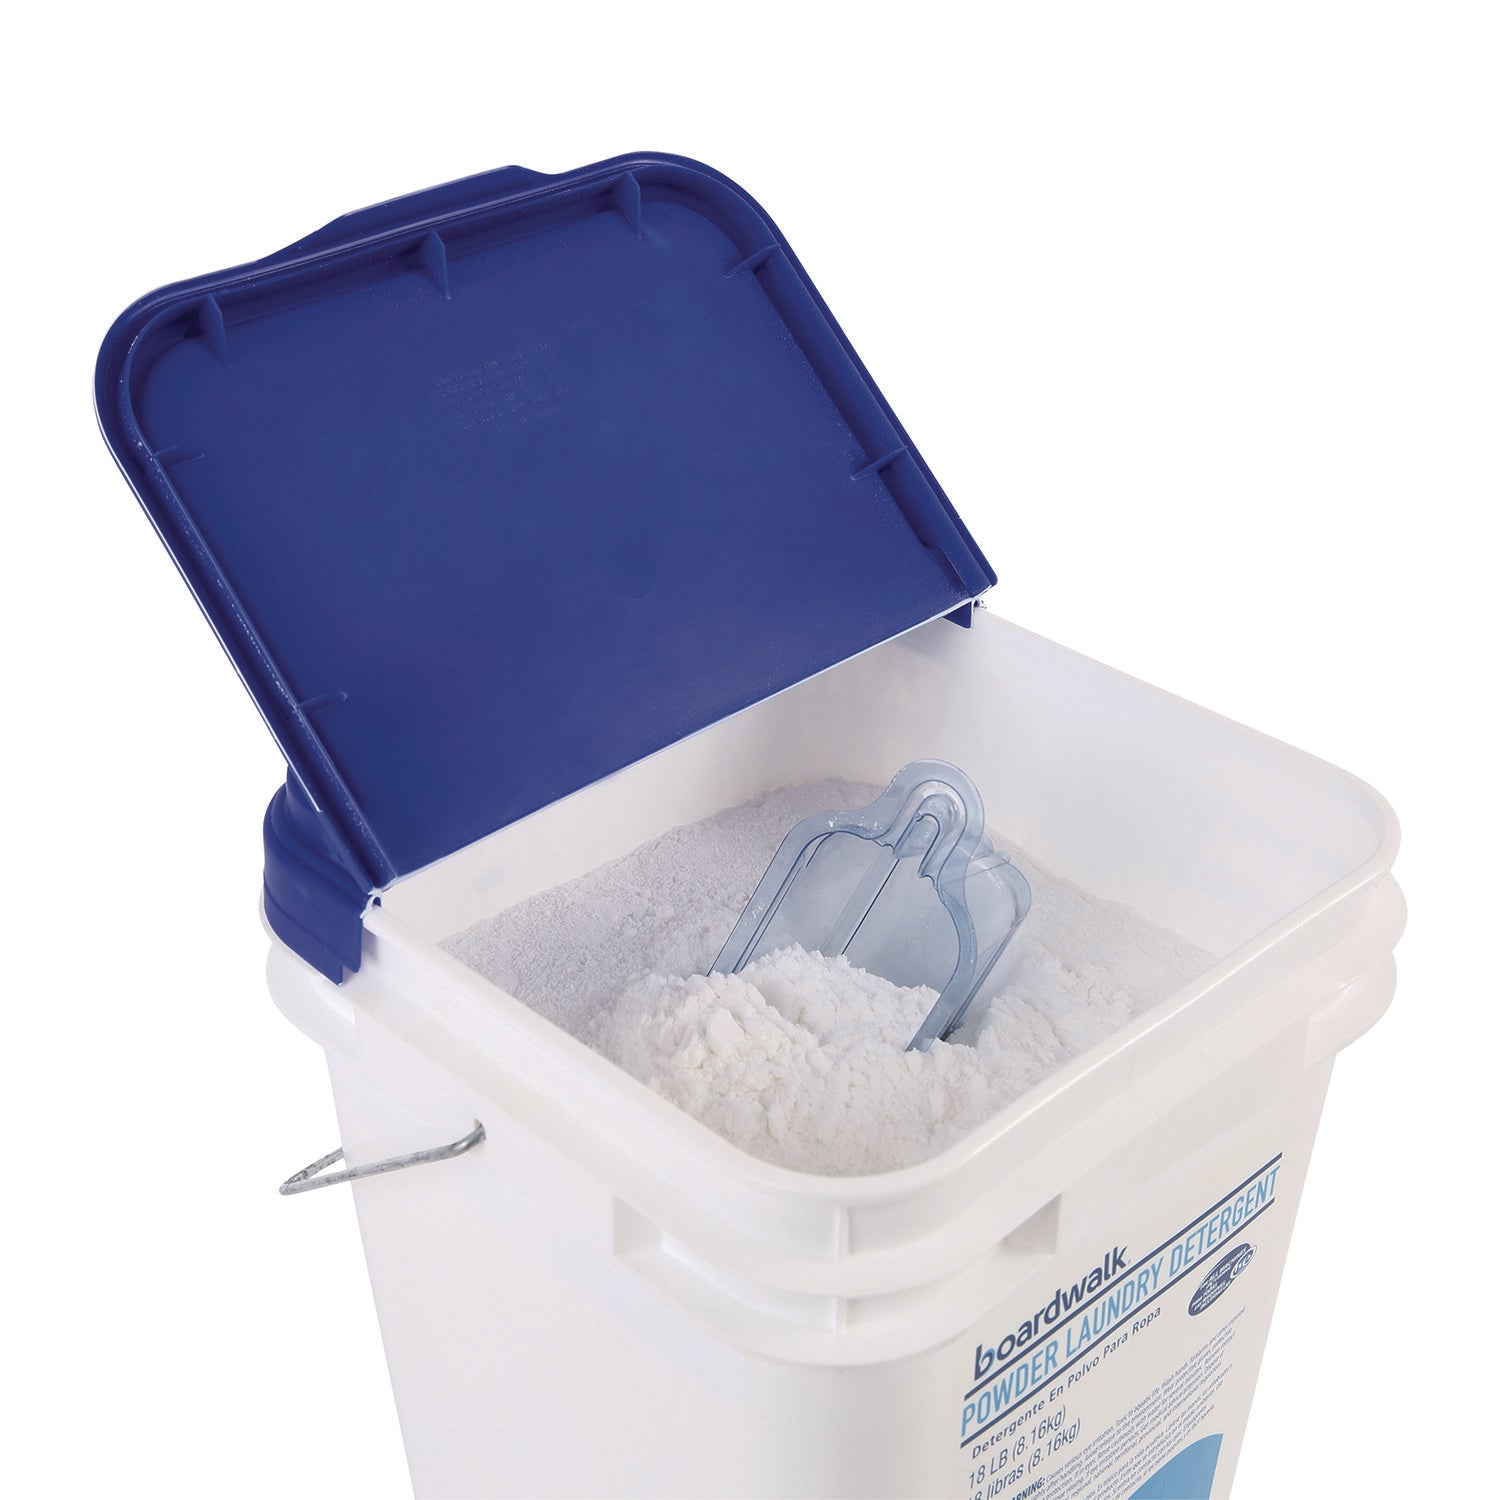 Laundry Detergent Powder, Low Foam, Crisp Clean Scent, 18 lb Pail